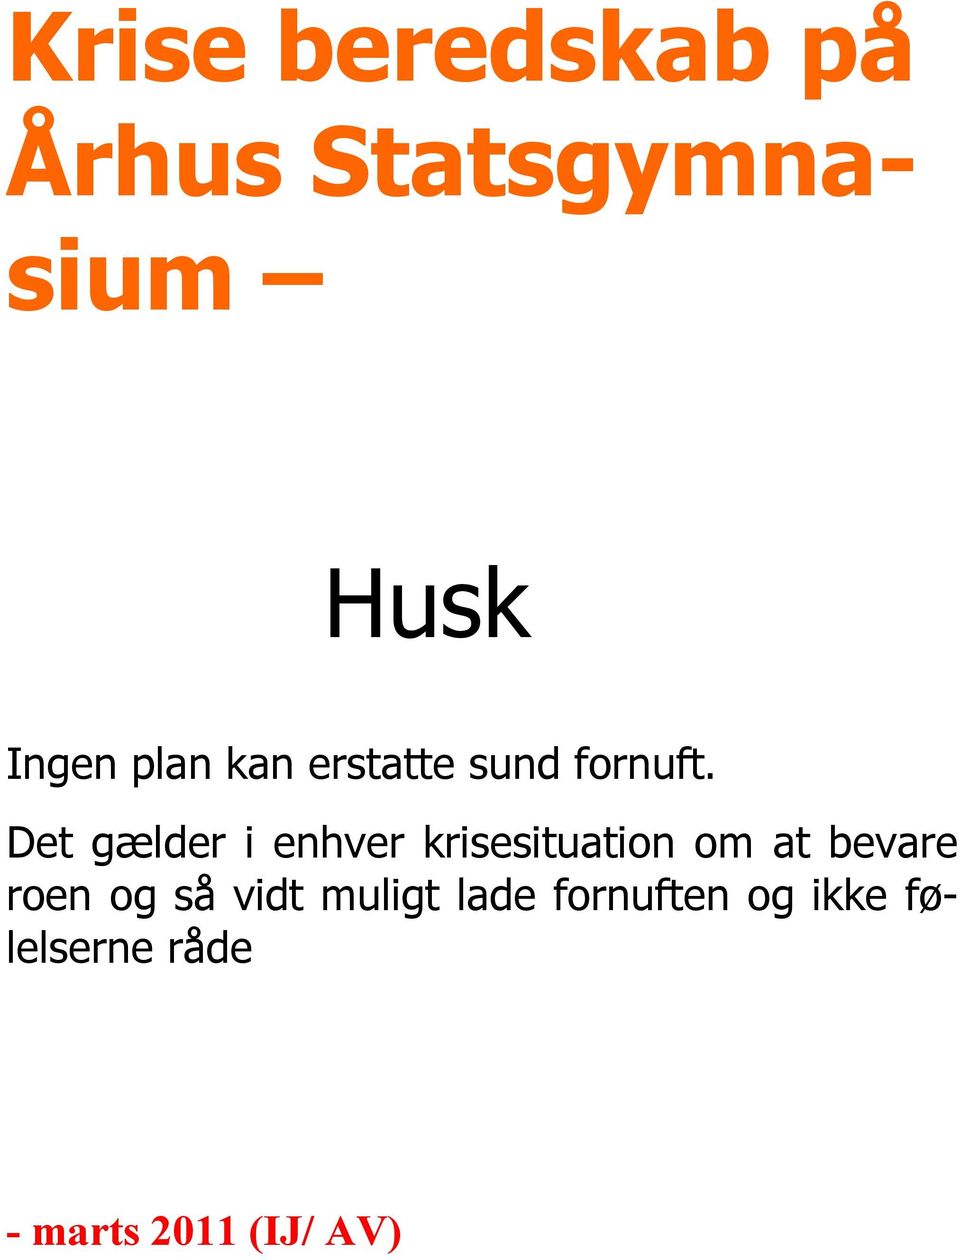 Krise beredskab på Århus Statsgymnasium. Husk - Gratis download